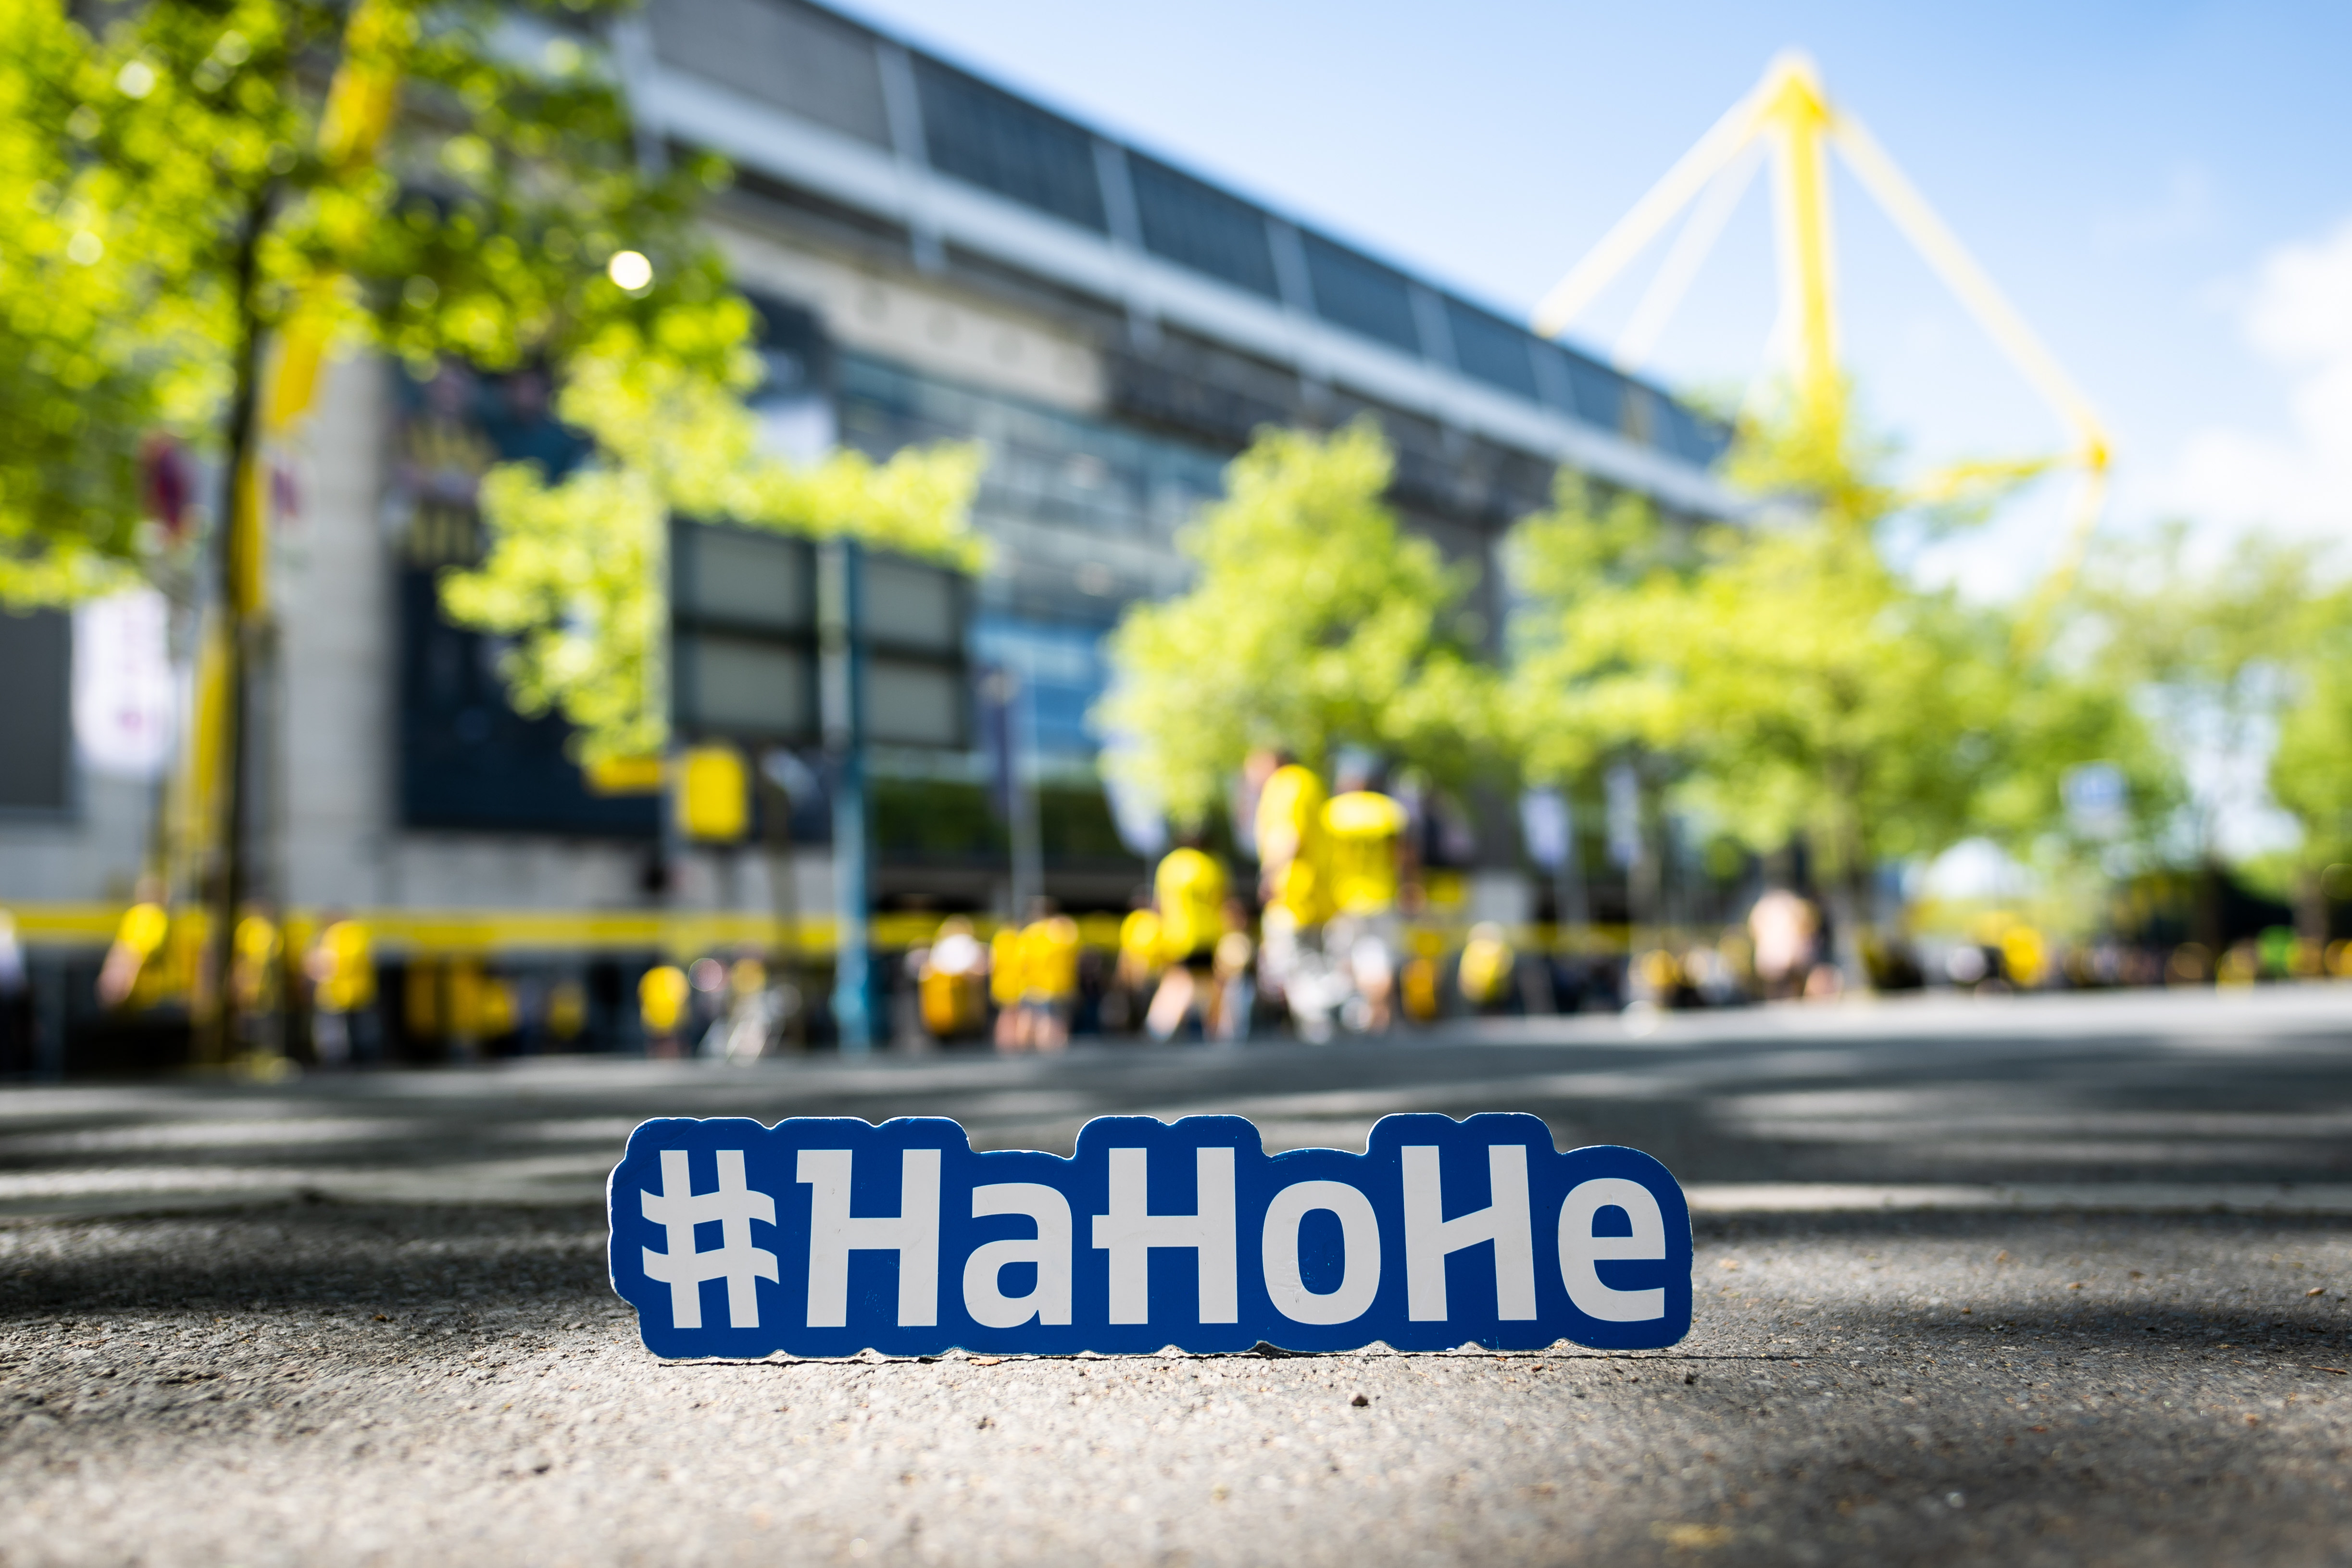 Das Westfalenstadion mit HaHoHe-Schild davor.